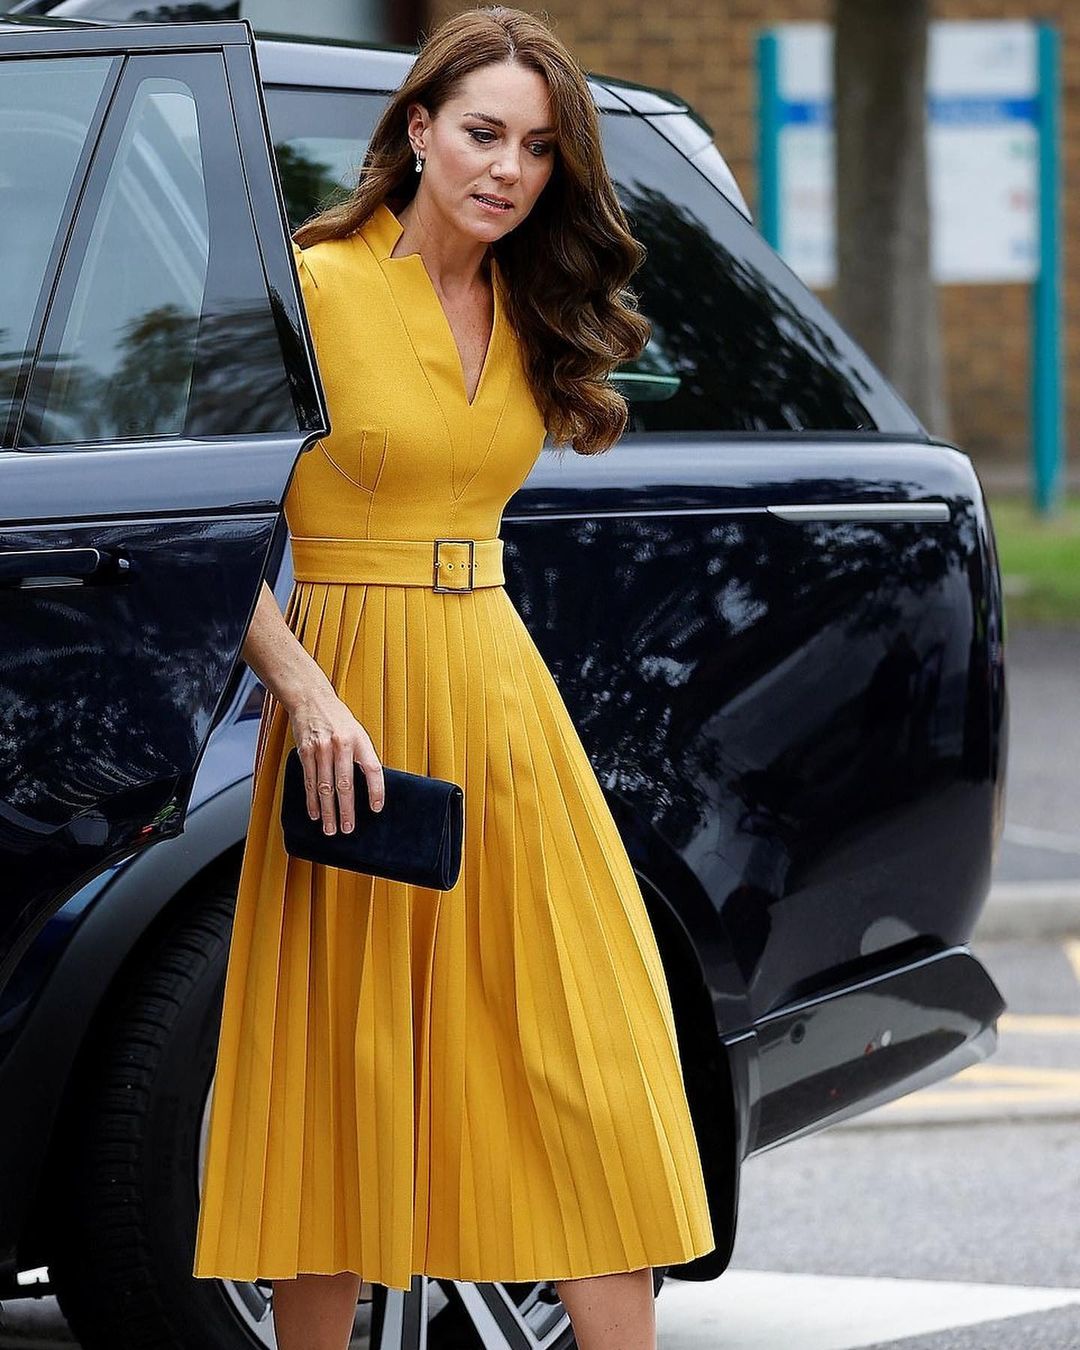 Как солнышко: Кейт Миддлтон сменила траурный наряд на ярко-желтое платье с плиссированной юбкой